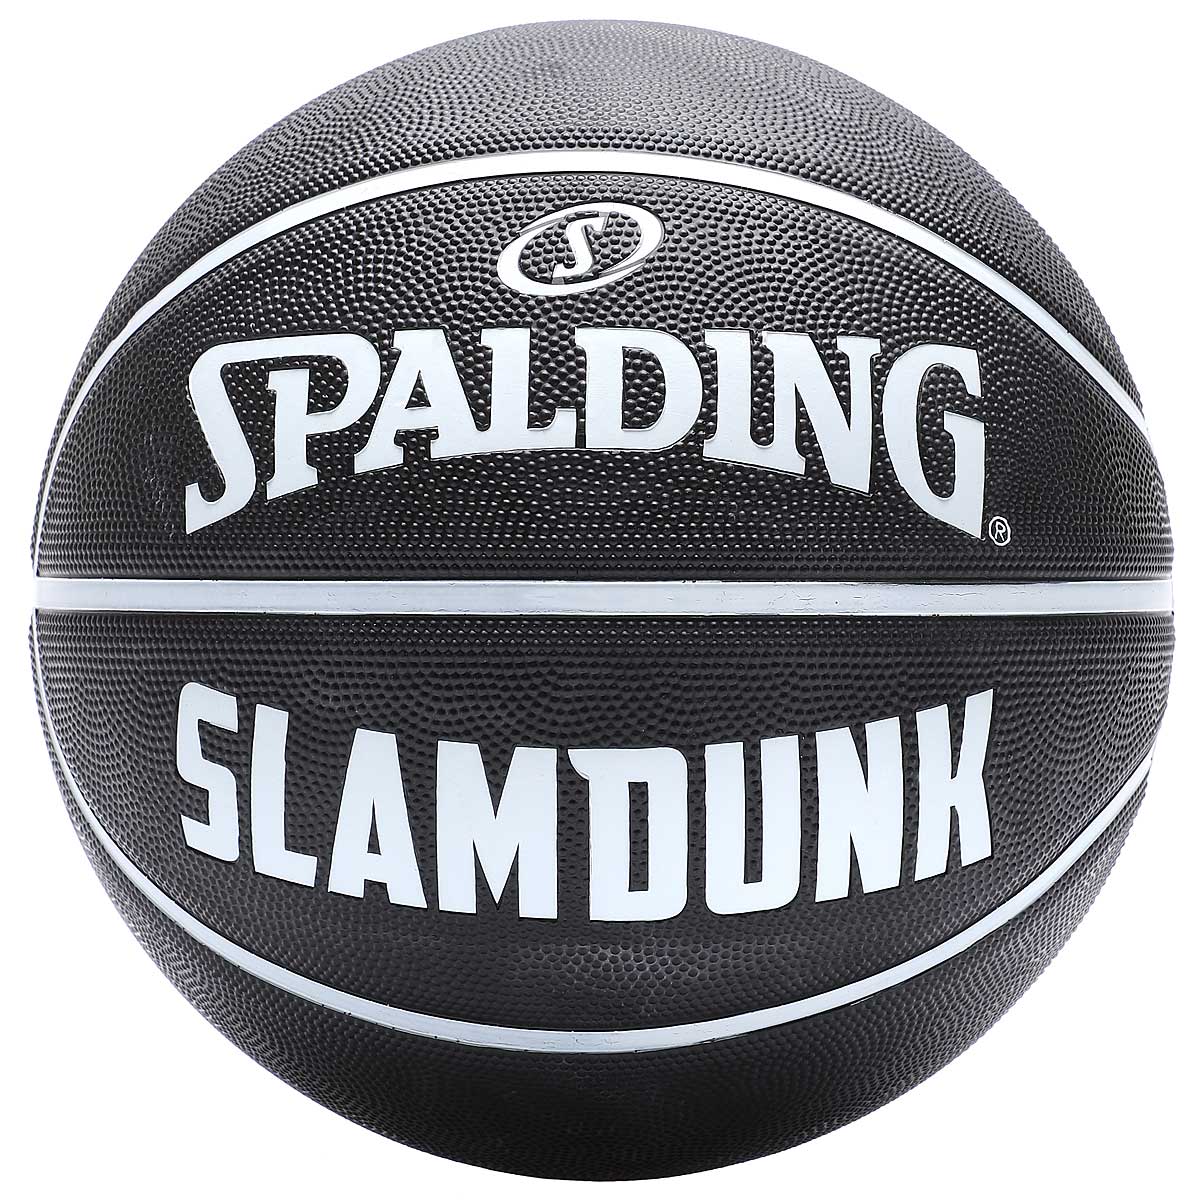 Spalding Slam Dunk Outdoor Basketball, Noir / Noir / Blanc 7